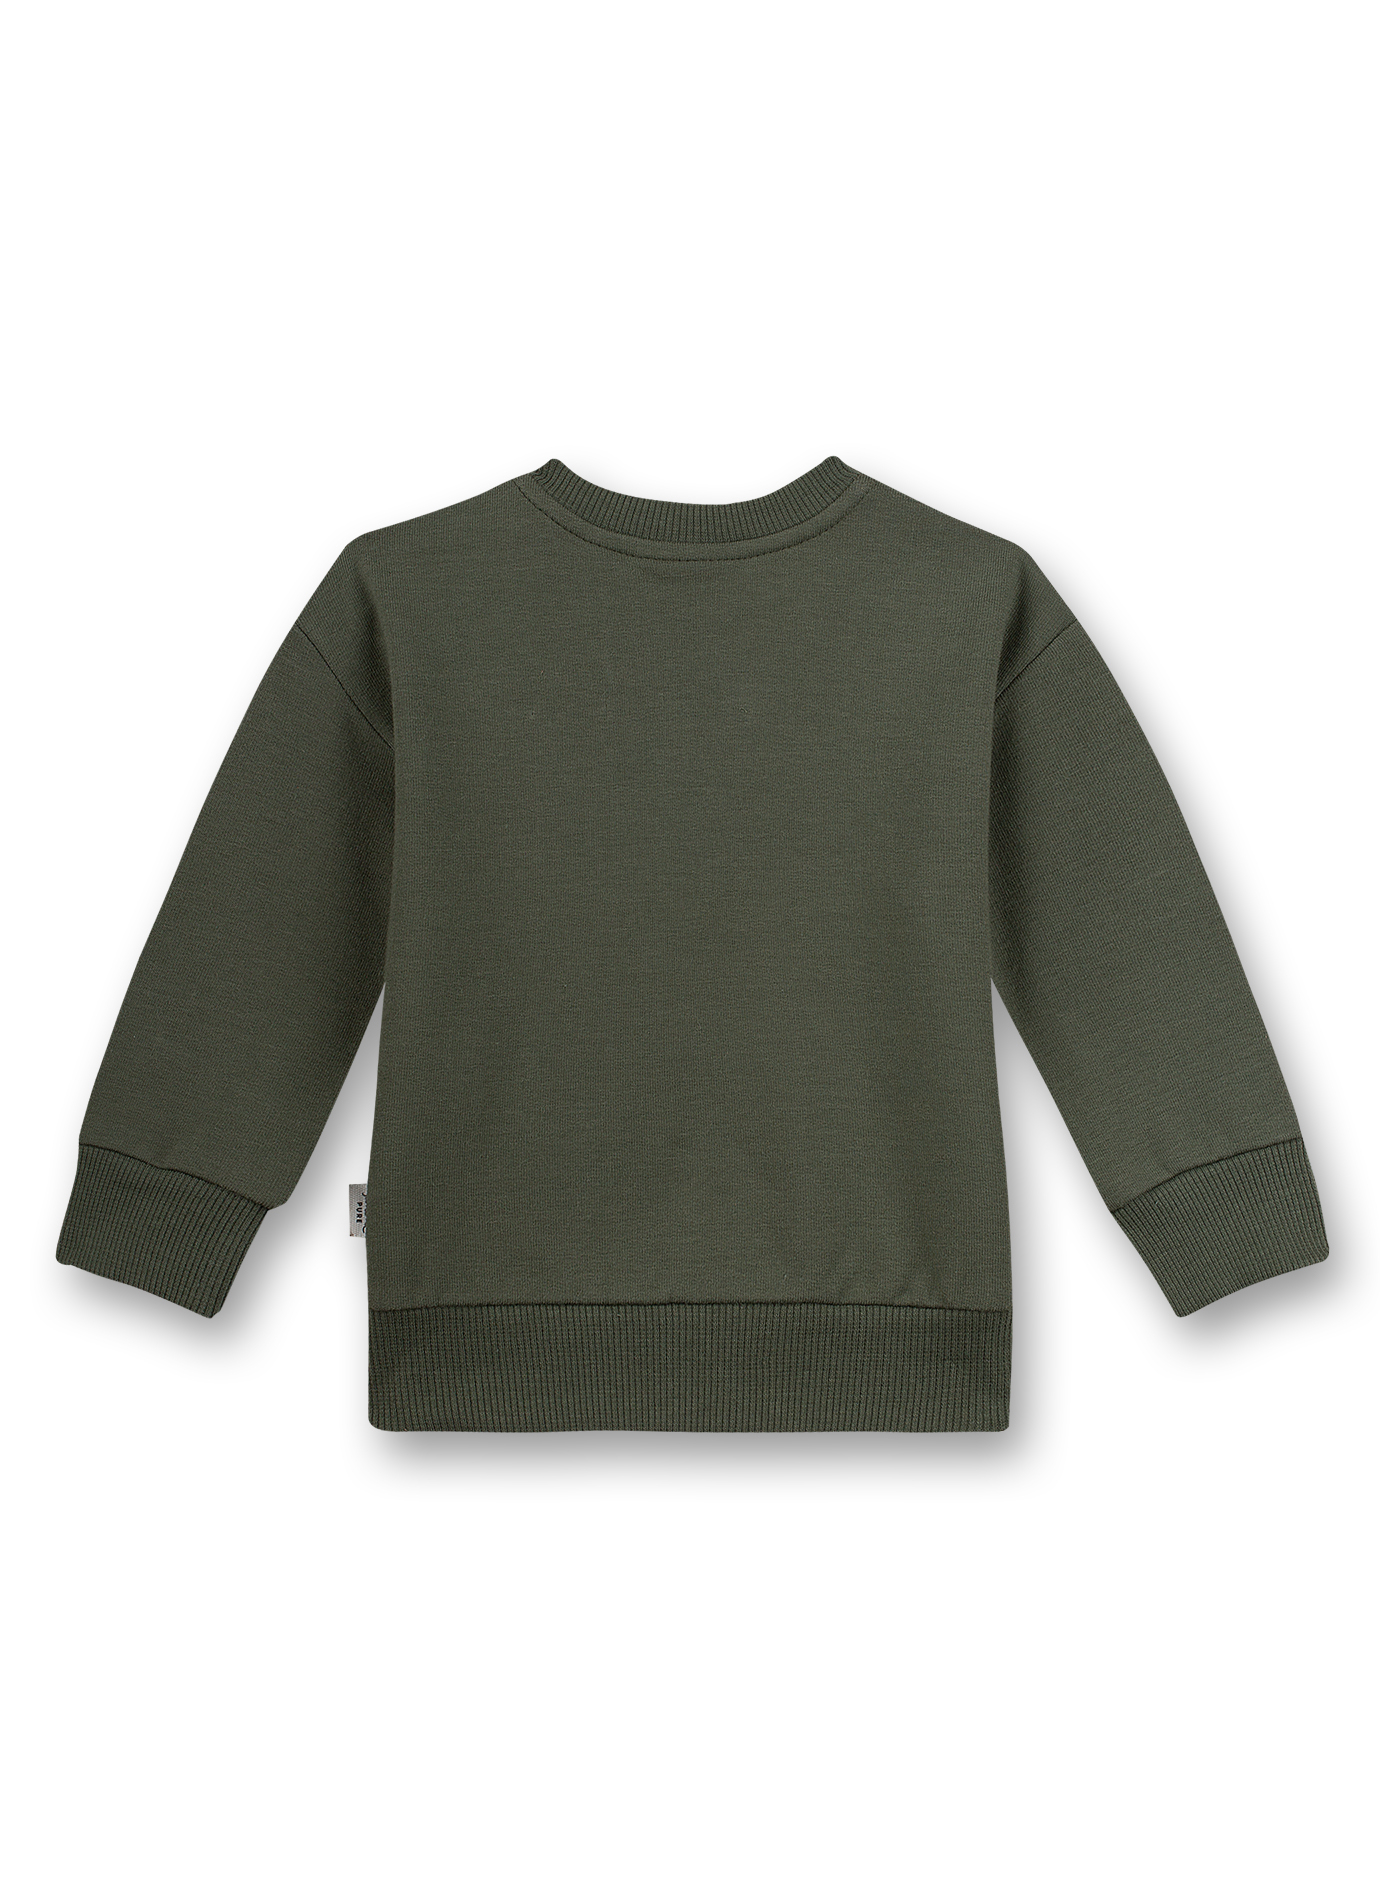 Jungen-Sweatshirt Grün